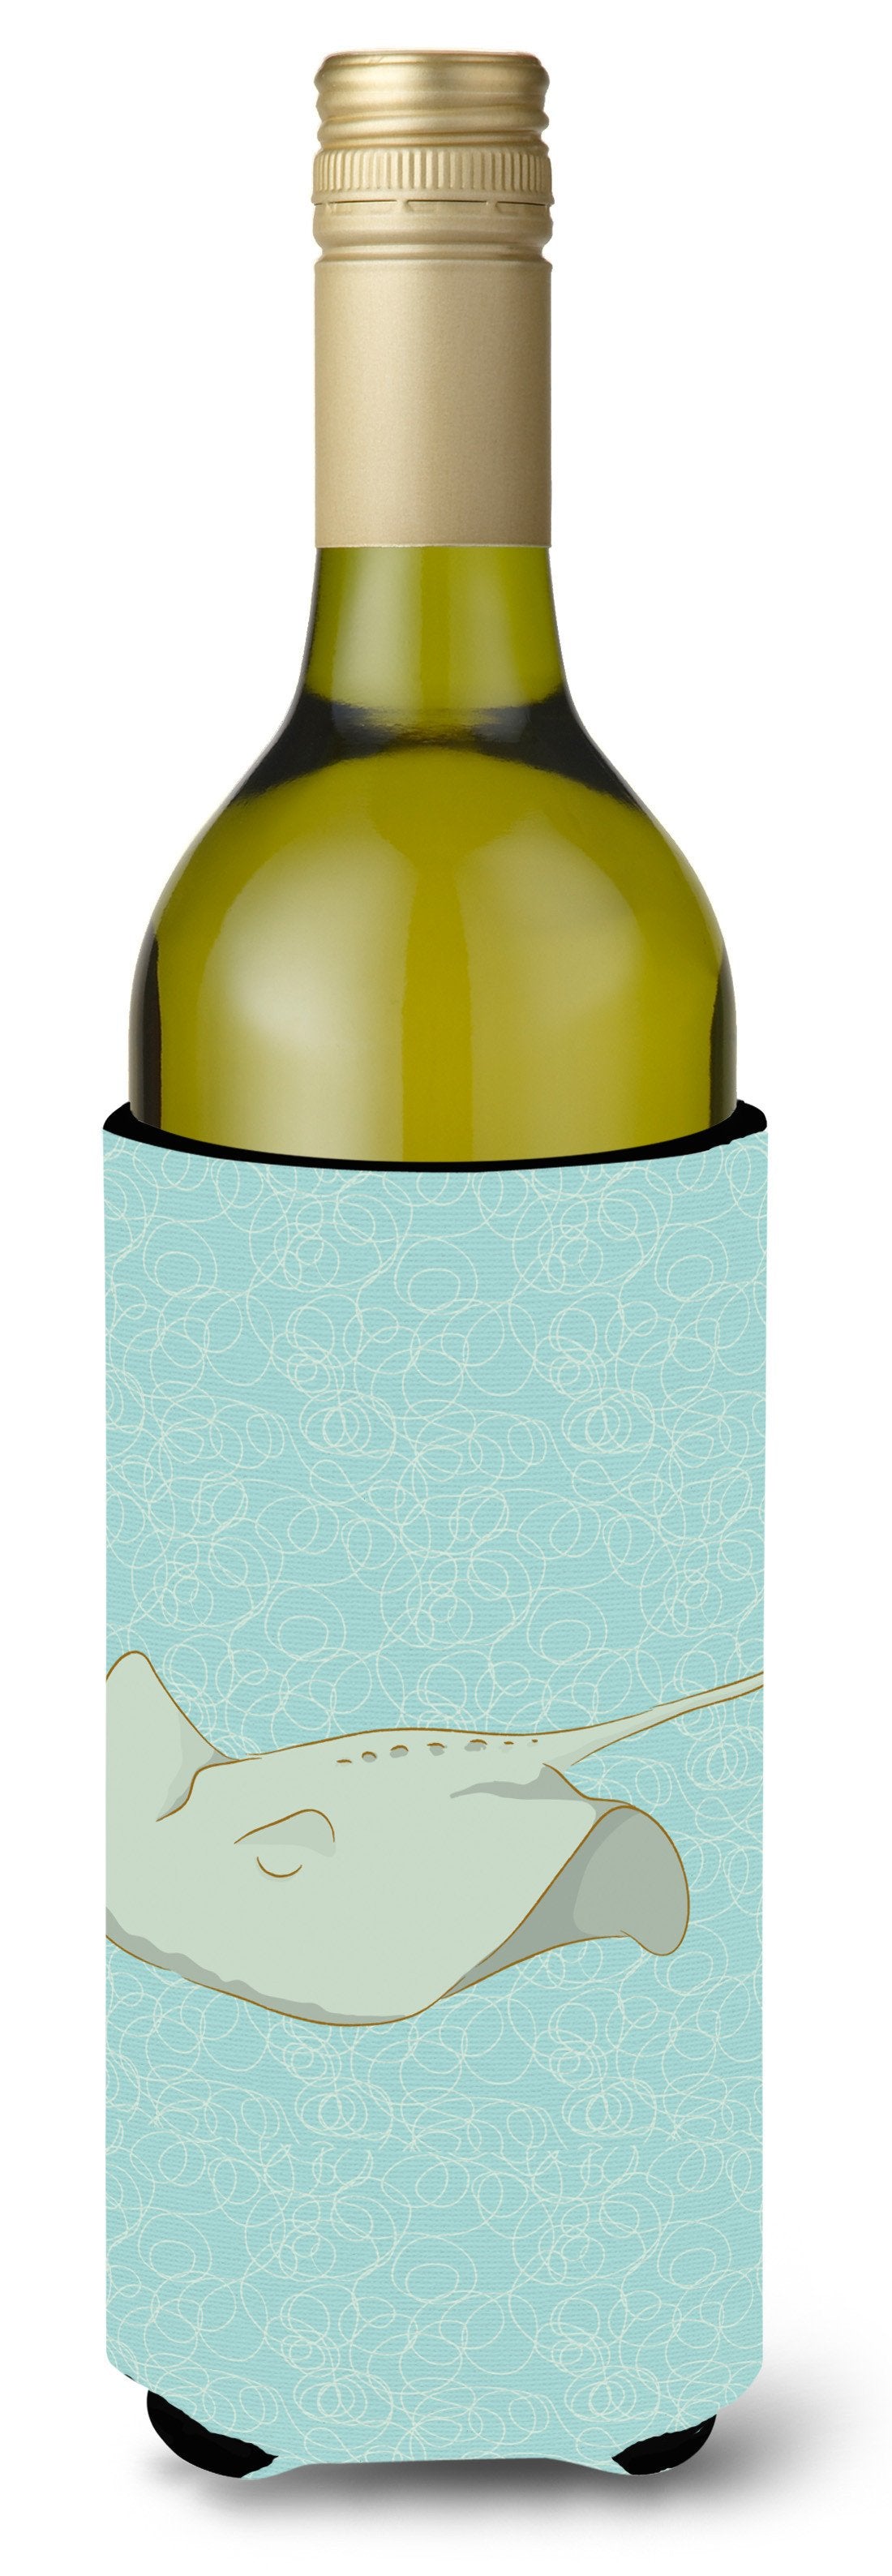 Sting Ray Wine Bottle Beverge Insulator Hugger BB8571LITERK by Caroline's Treasures